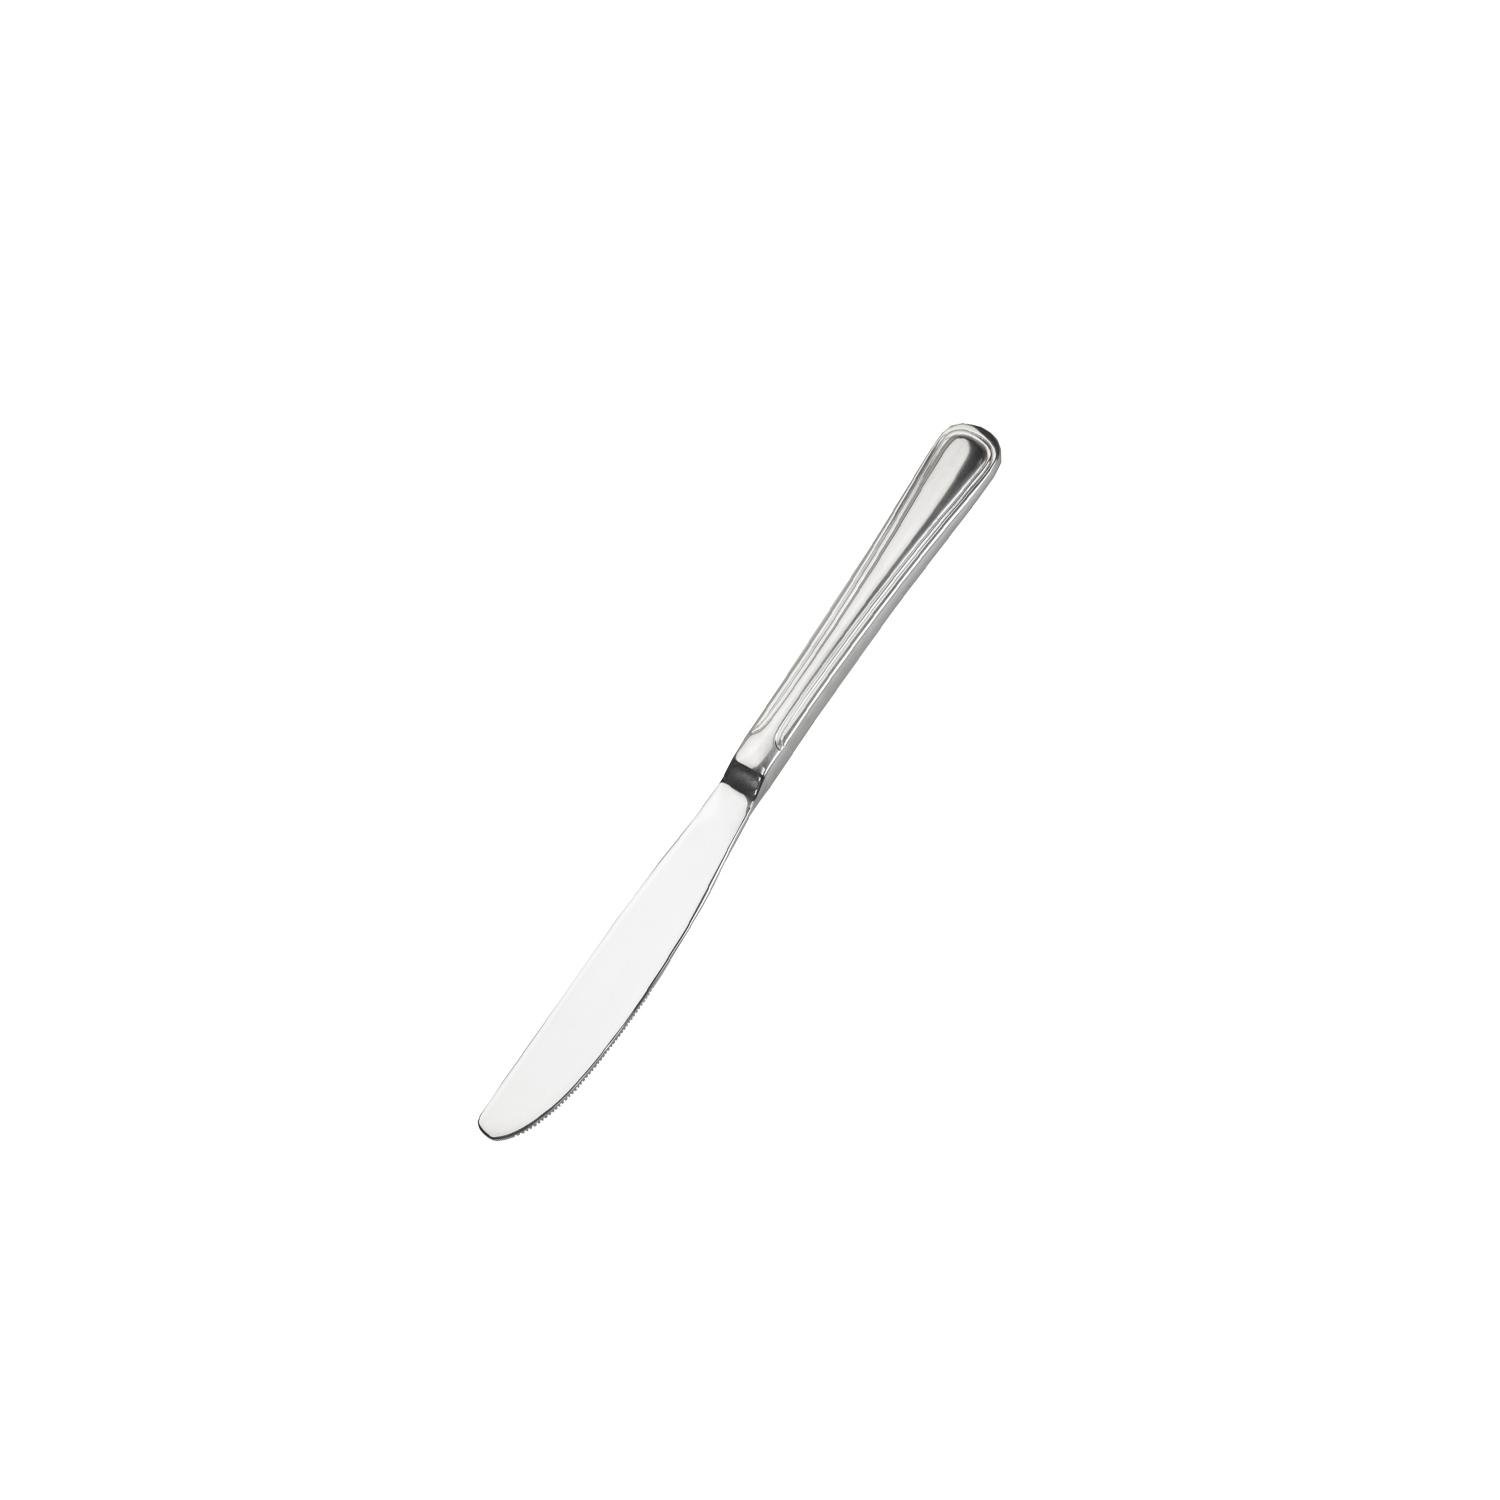 Нож закусочный Winco Shangarila нержавеющая сталь (00335)